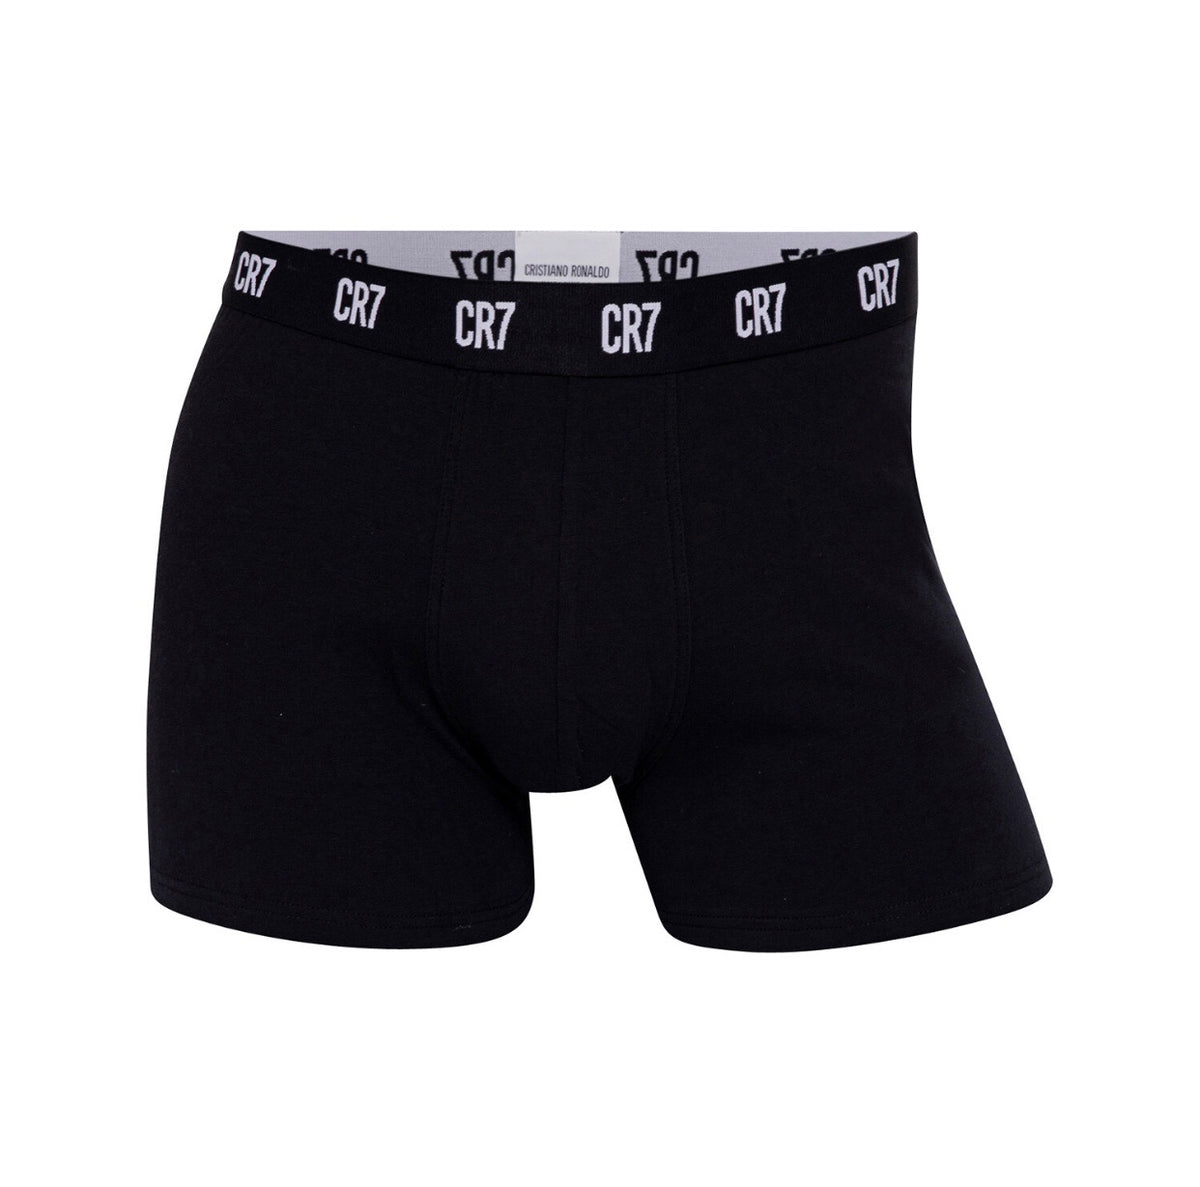 CR7 Underwear – OASIS